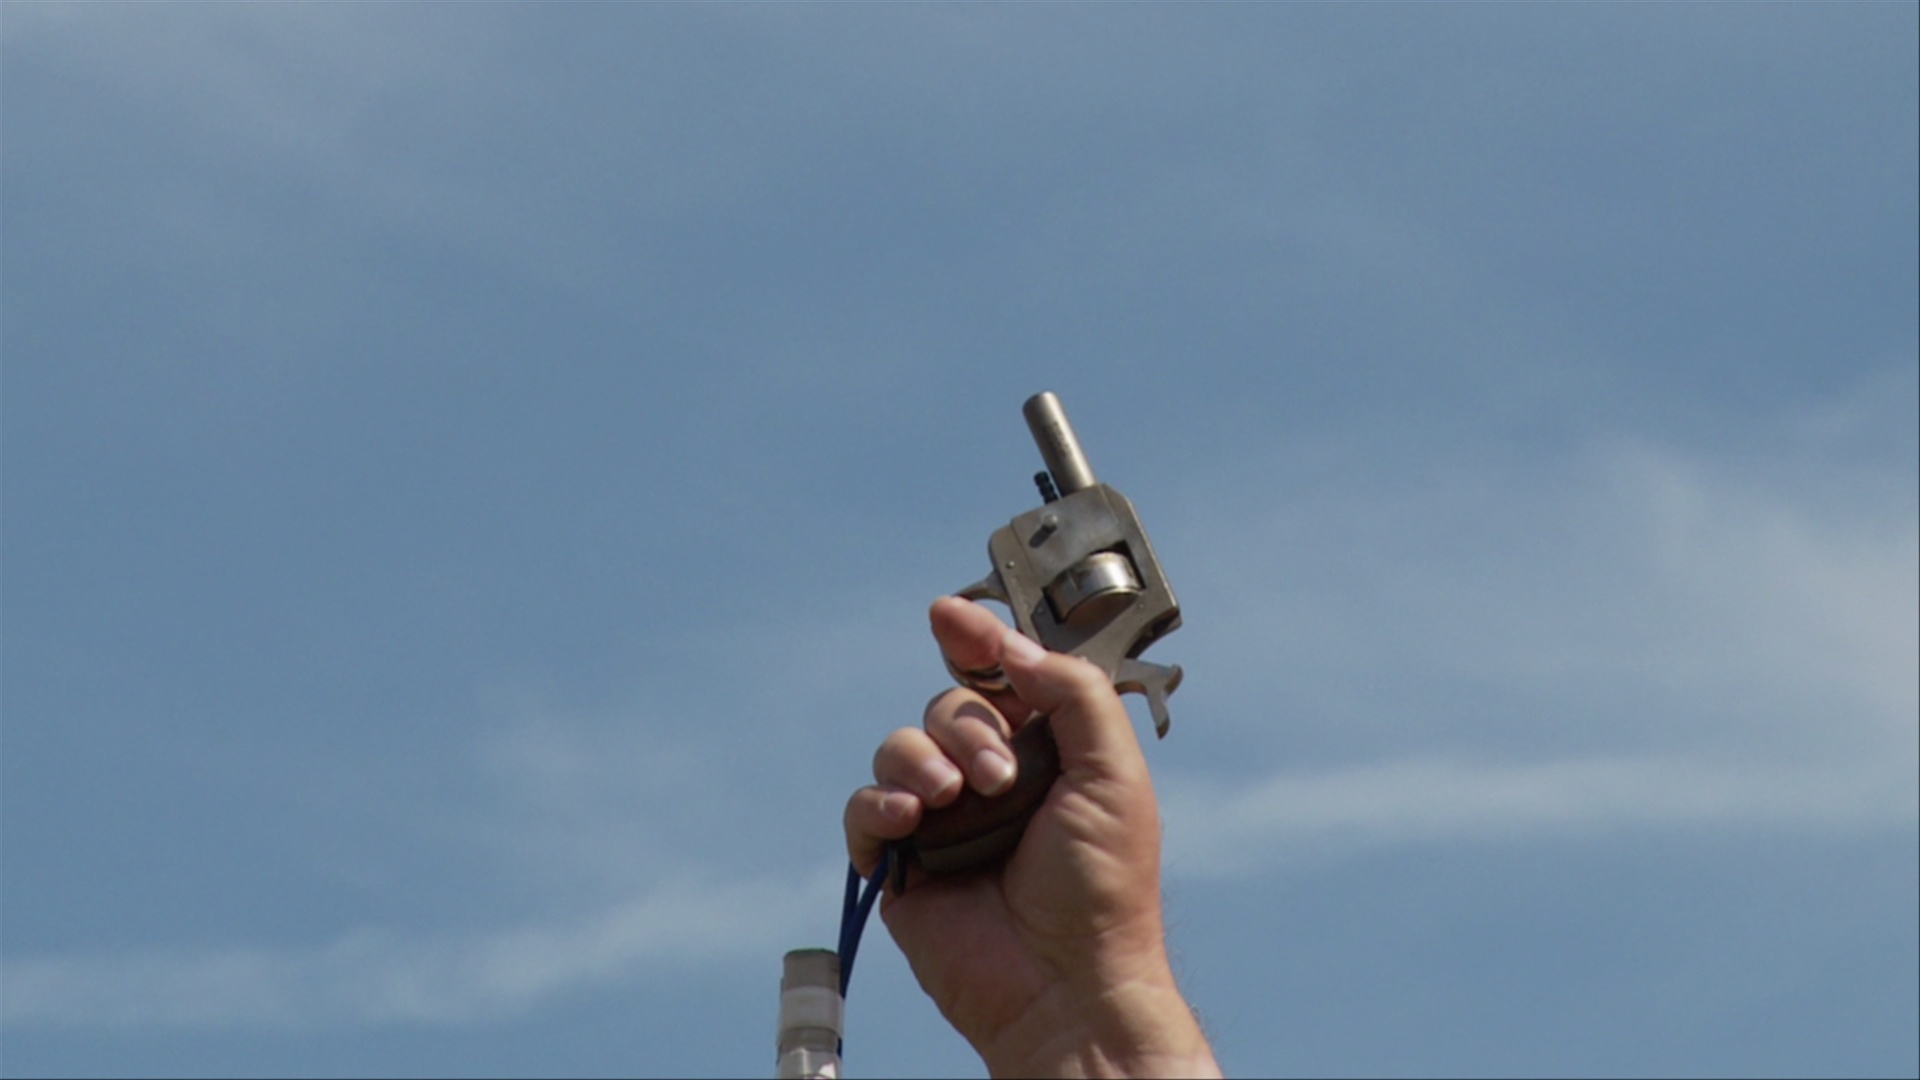 CU，一个人在空中开枪，手持枪的视图/亚特兰大，乔治亚州，美国视频购买